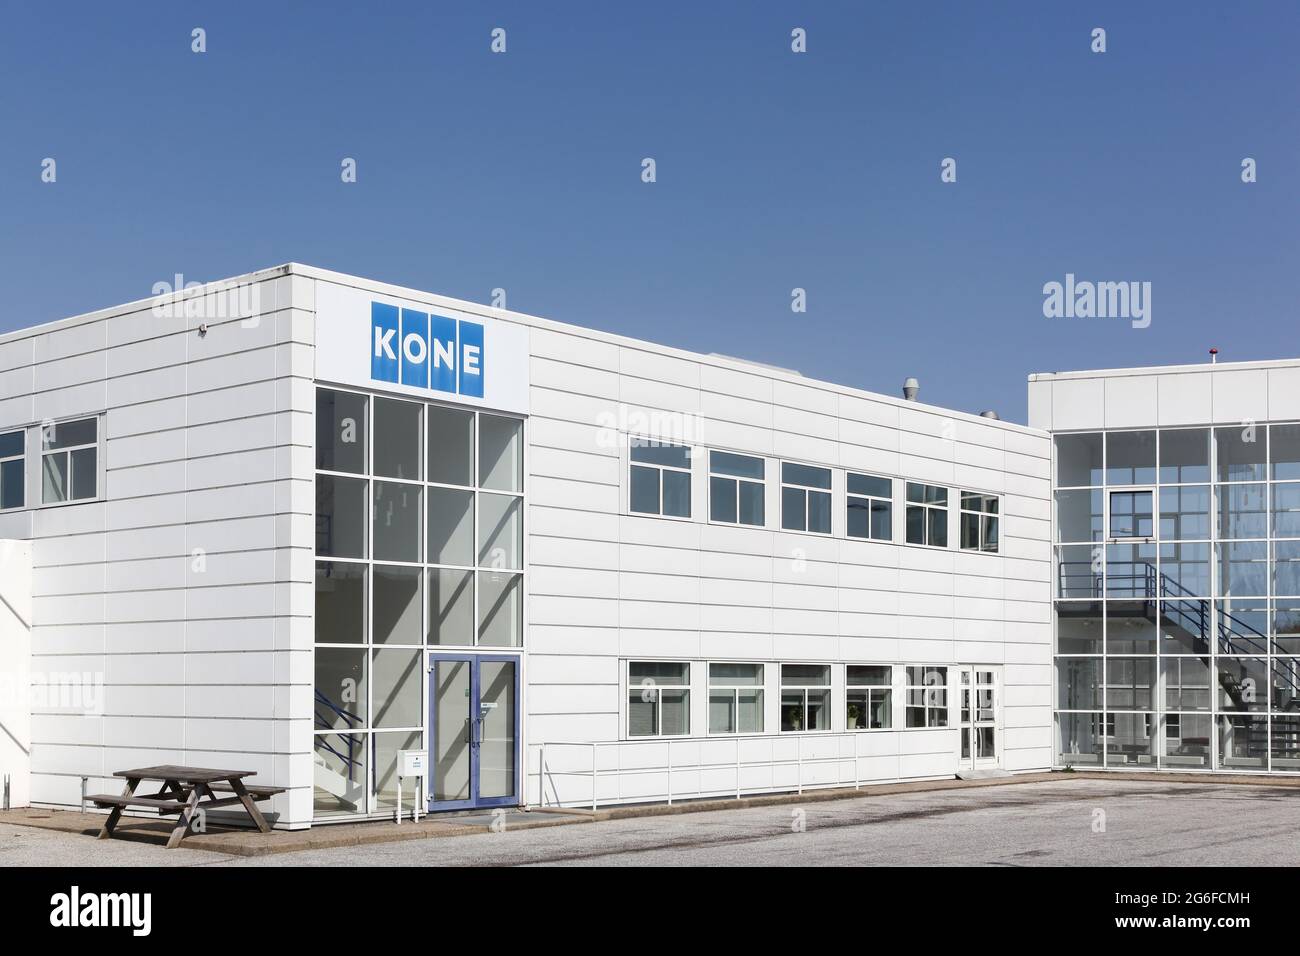 Tilst, Danemark - 18 avril 2021 : immeuble de bureaux Kone. Kone est une société internationale d'ingénierie et de services Banque D'Images